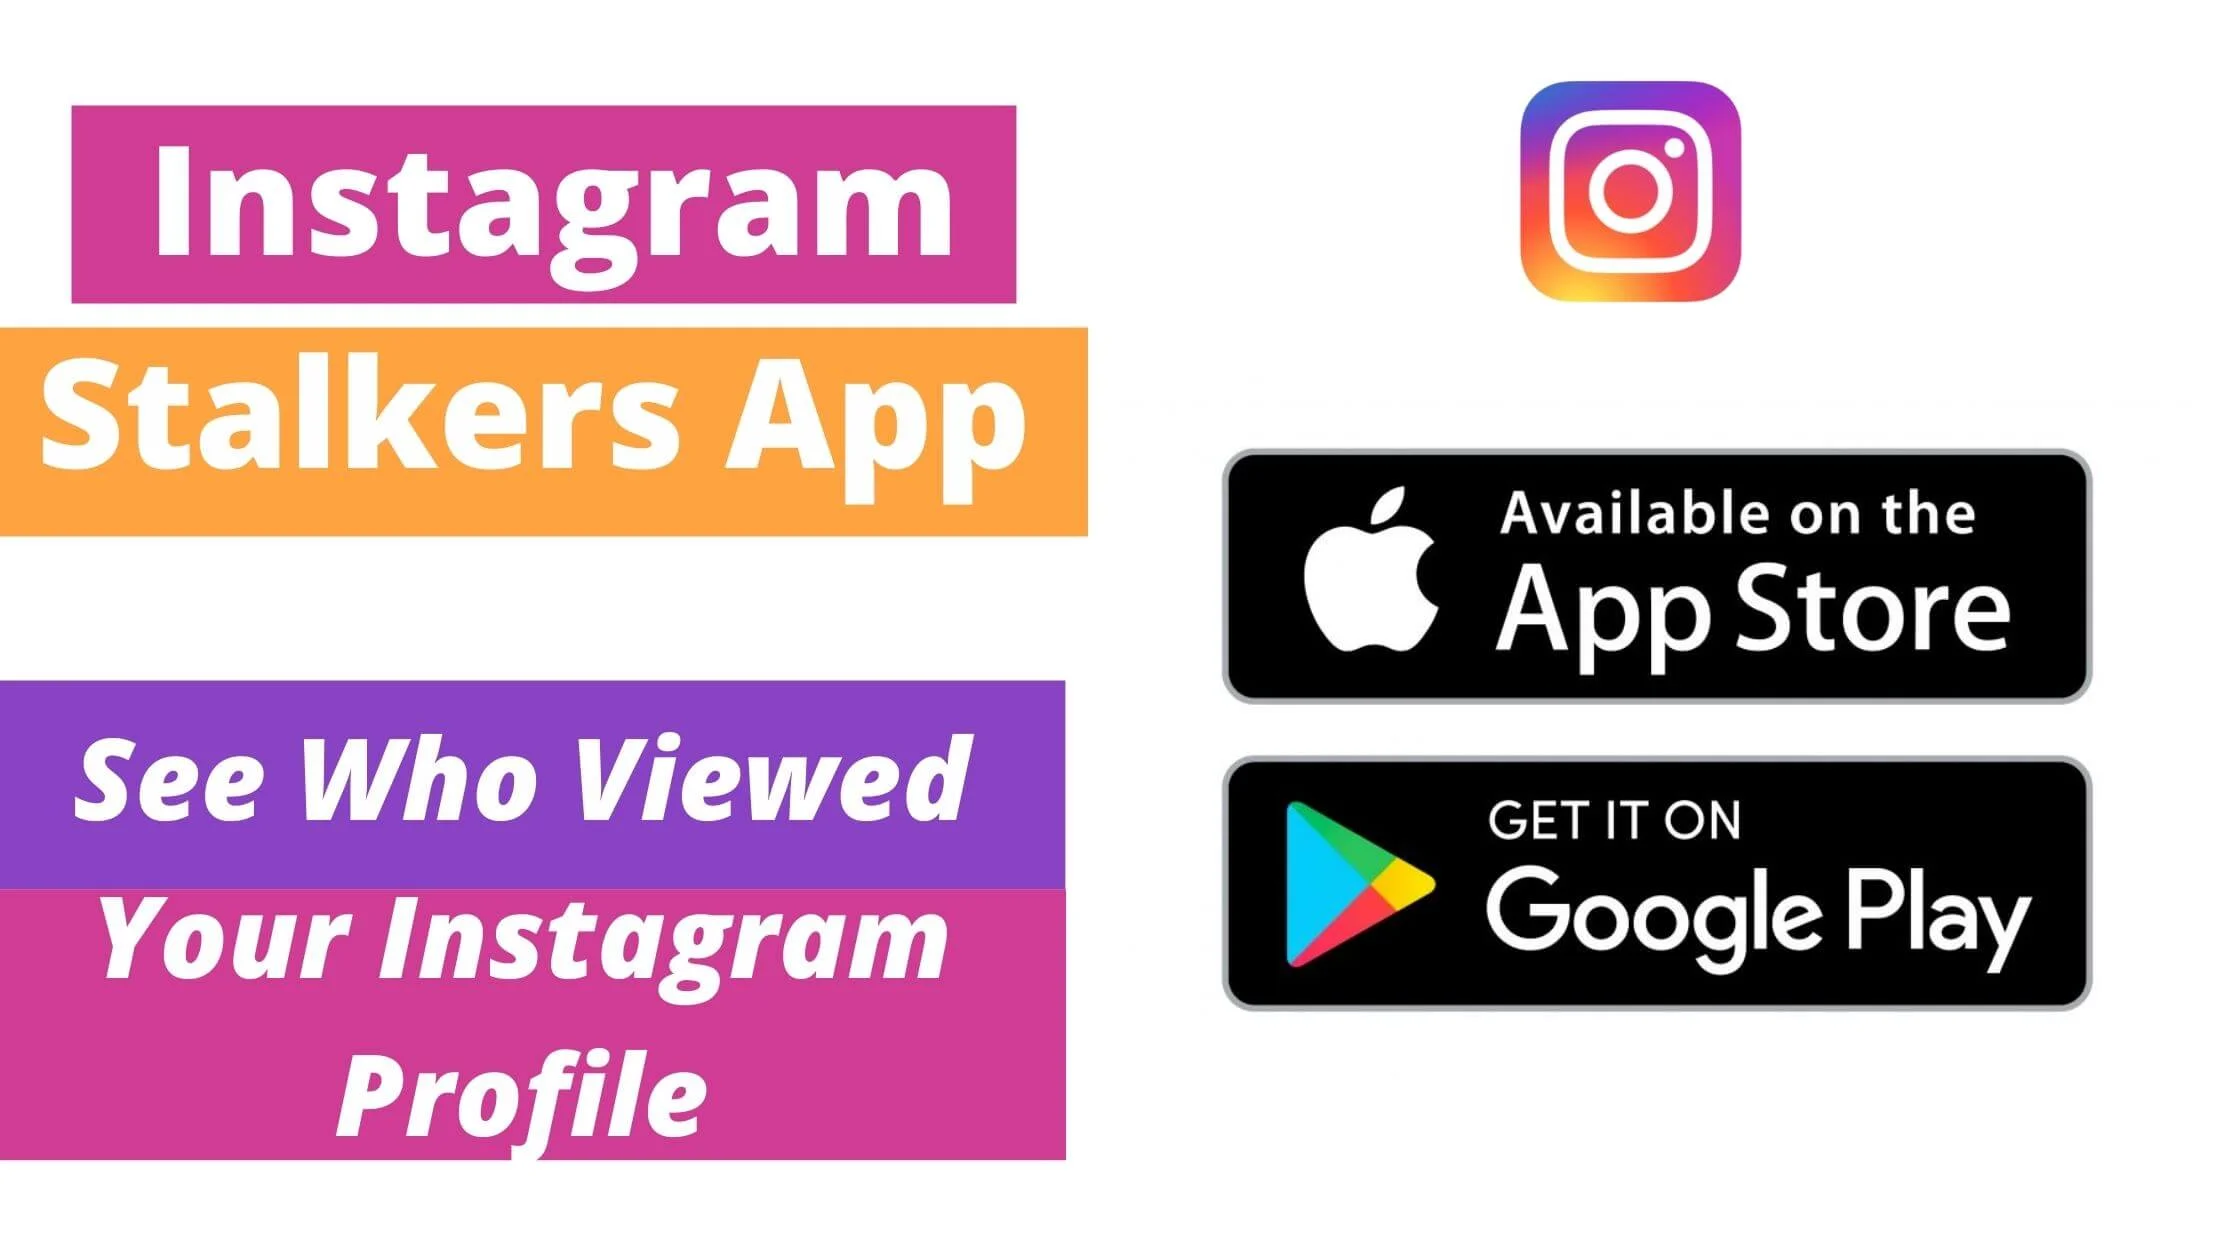 Instagram Stalkers App